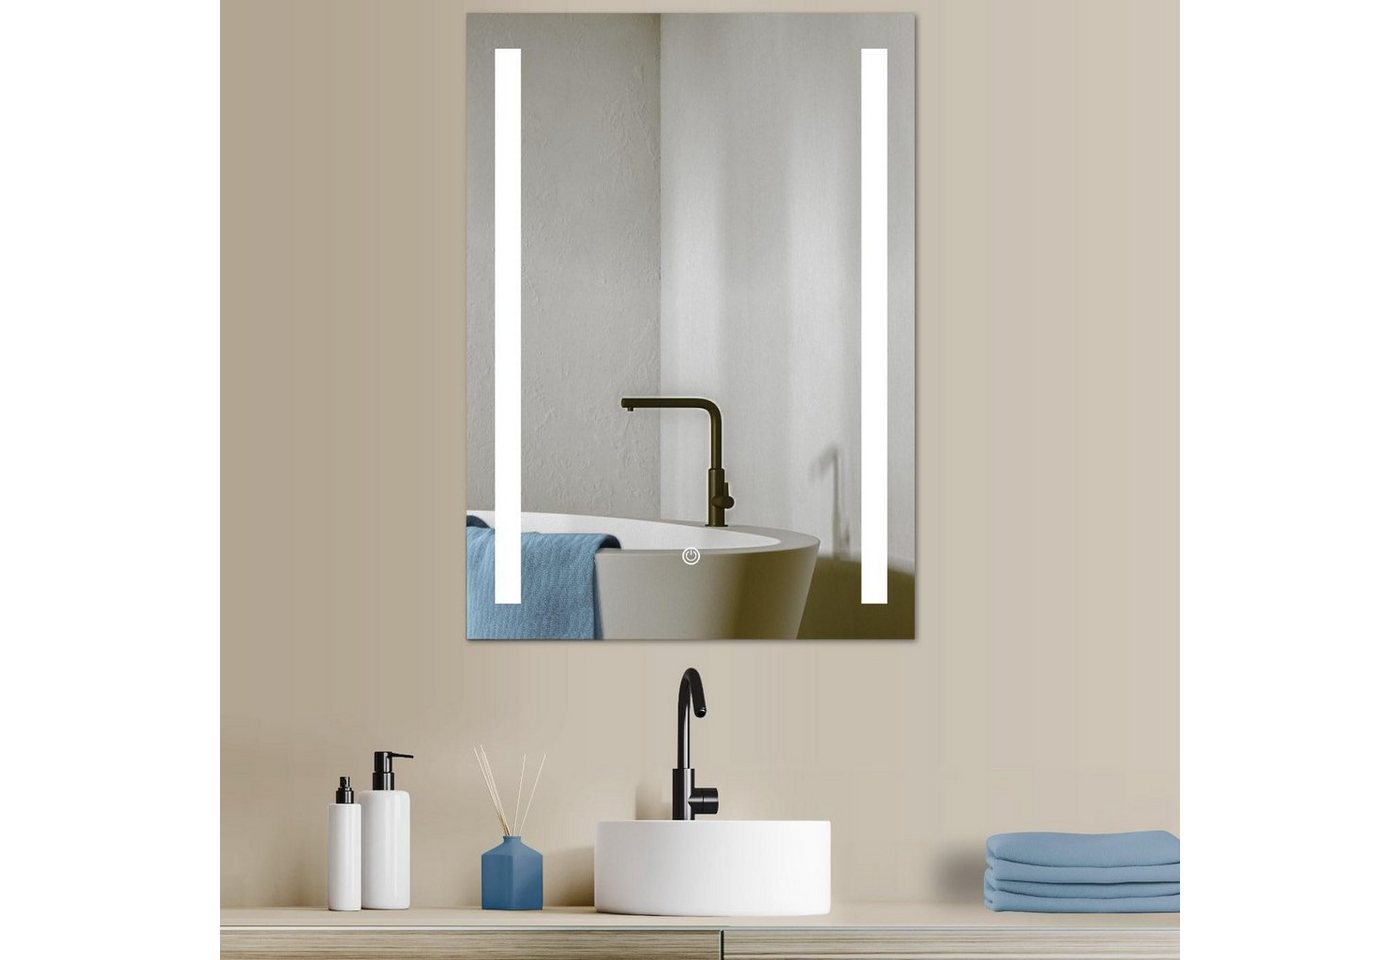 HOKO Badspiegel LED Design Wandspiegel 50x70/60x80cm+ LED Wechsel (Warmweiß - Kaltweiß - Neutral. Licht mit Touch Schalter und mit Wandschalter einschaltbar. Memory-Funktion.IP44, 5mm HD Glass) von HOKO